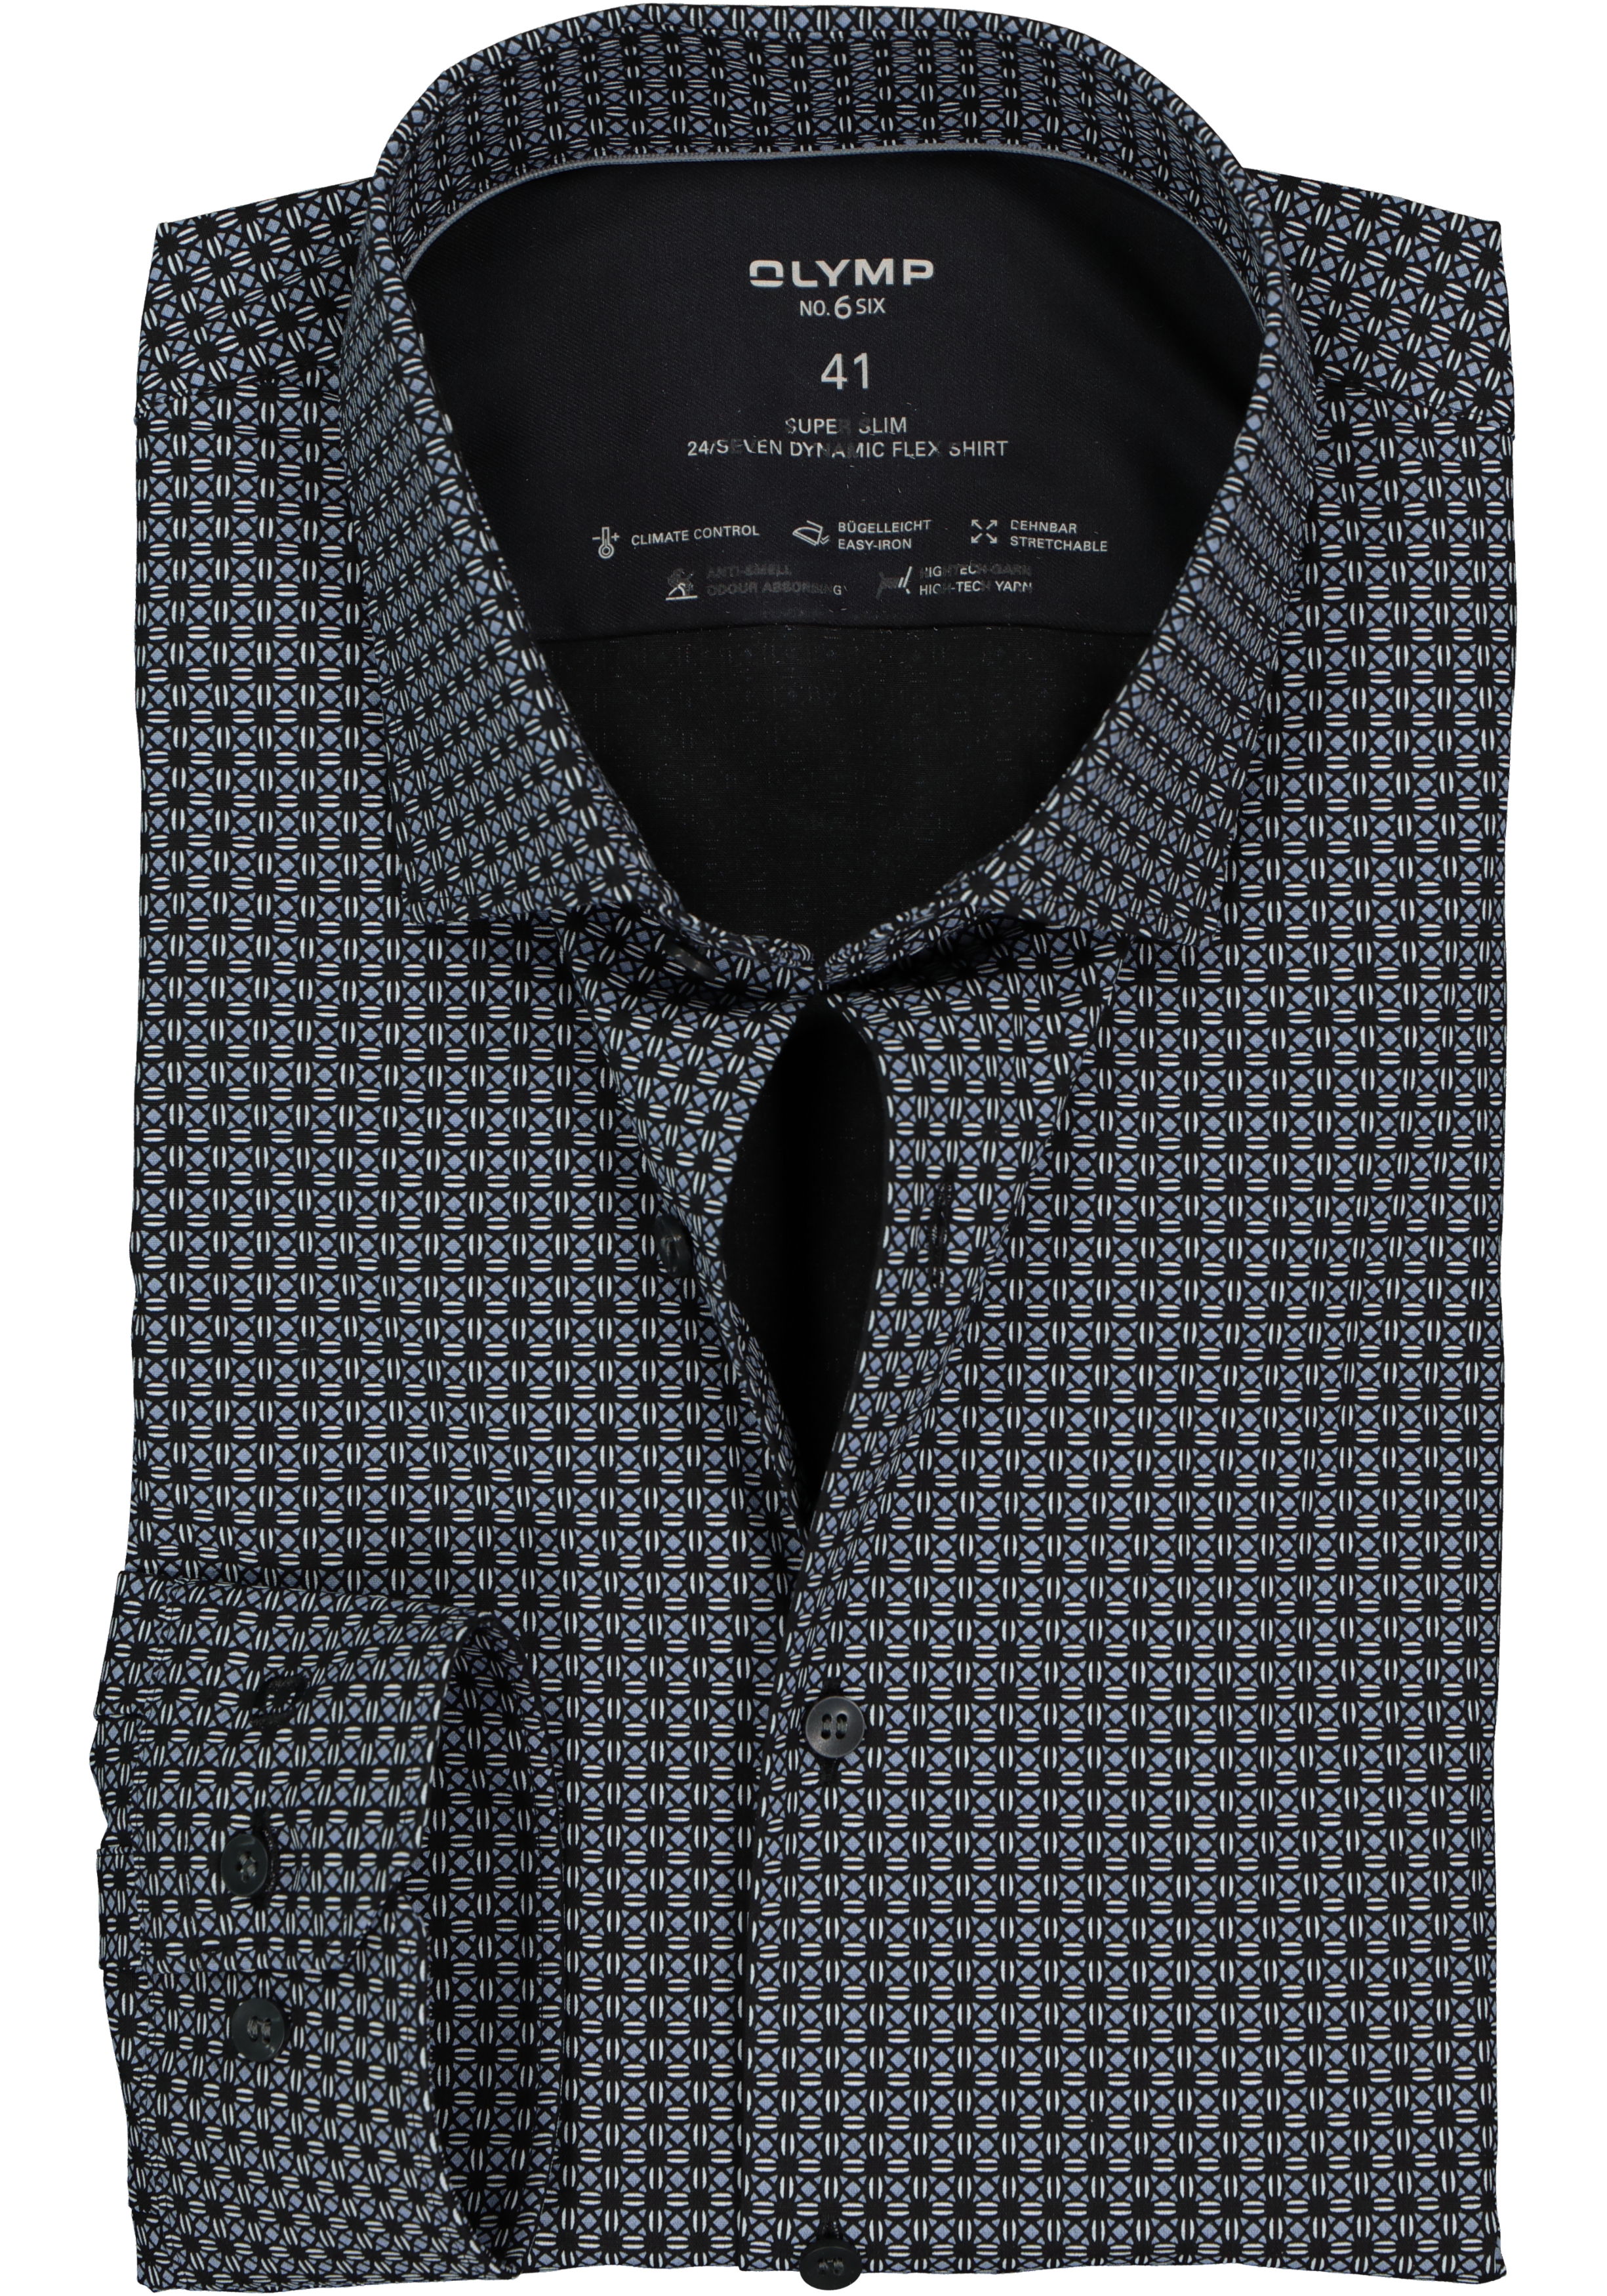 OLYMP No. 6 super slim fit overhemd 24/7, zwart met grijs en wit dessin tricot